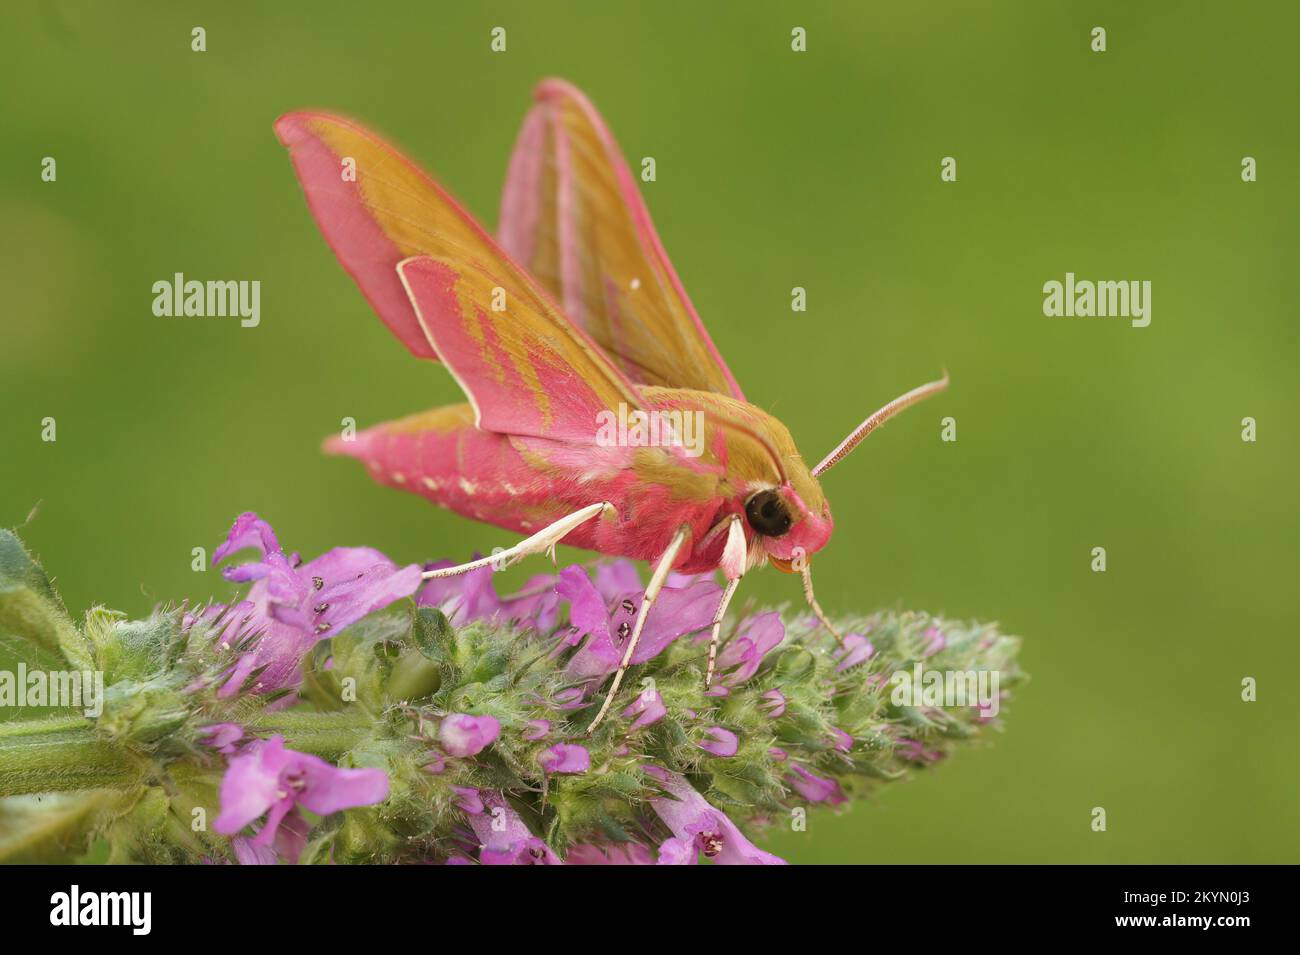 Nahaufnahme einer farbenfrohen, rosafarbenen, großen Elefanten-Falken-Motte, Deilephila elpenor, auf einem grünen, verschwommenen Hintergrund Stockfoto